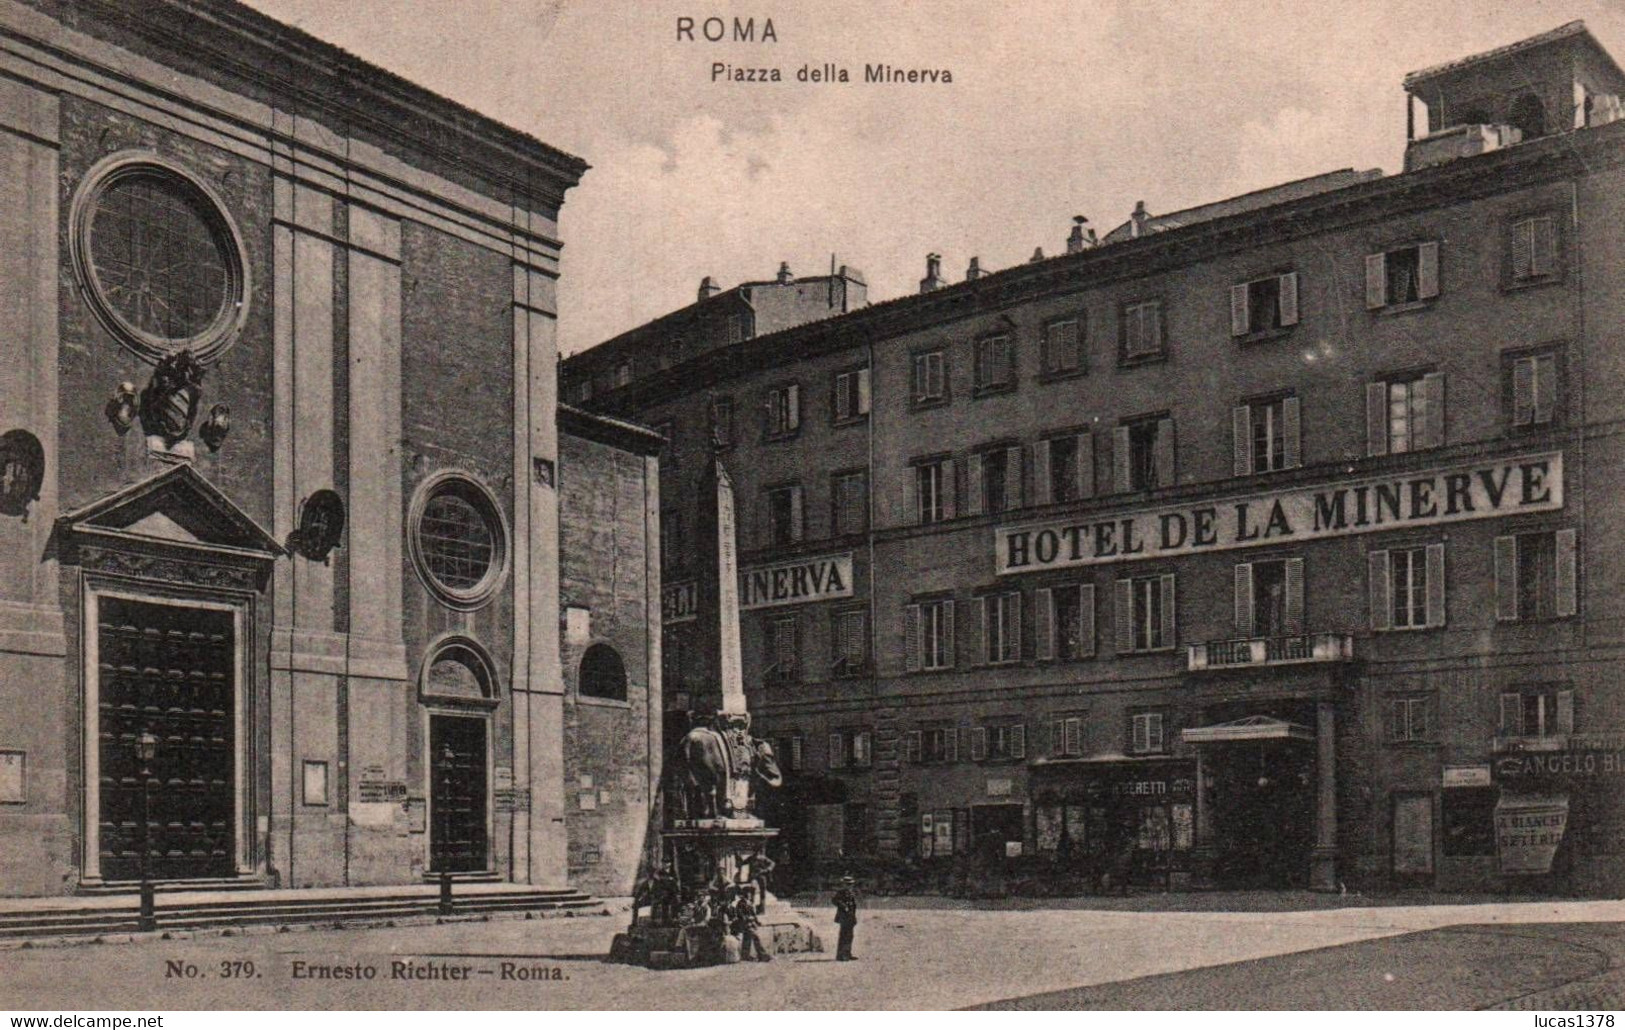 ROMA / PIAZZA DELLA MINERVA / HOTEL DE LA MINERVE - Bars, Hotels & Restaurants